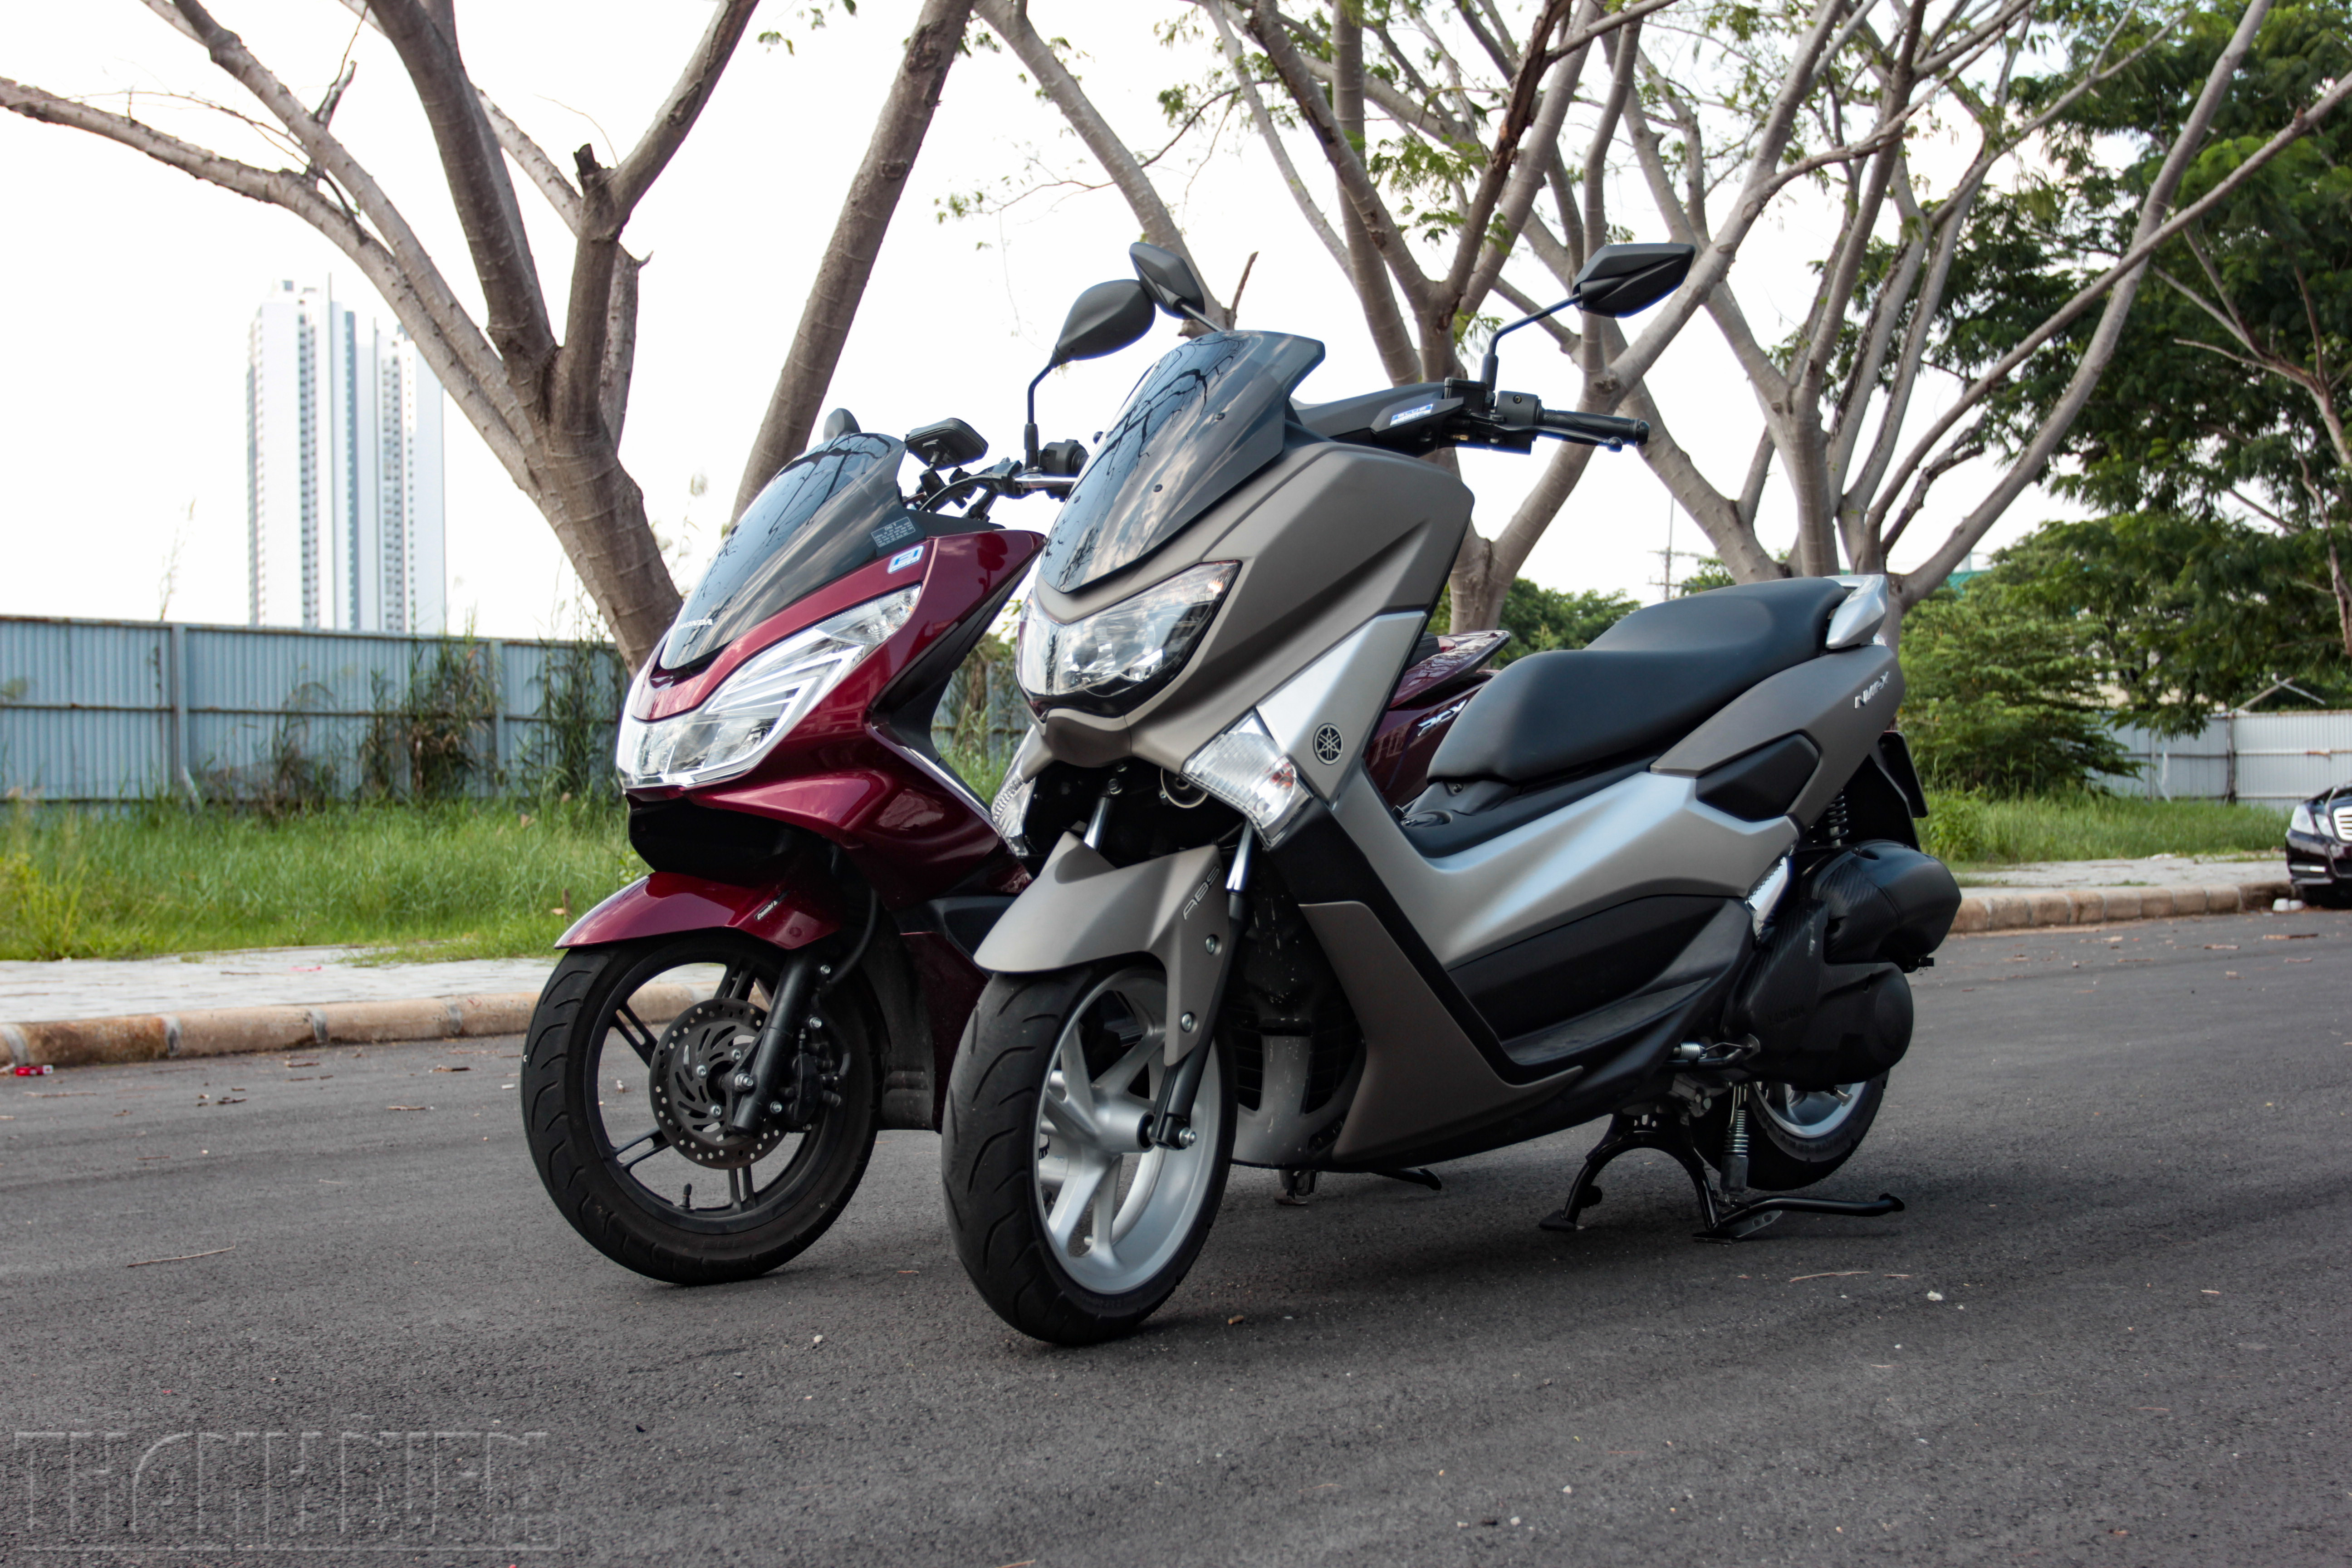 Đánh giá xe Yamaha NMX chi tiết hình ảnh giá bán thị trường 8   MuasamXecom